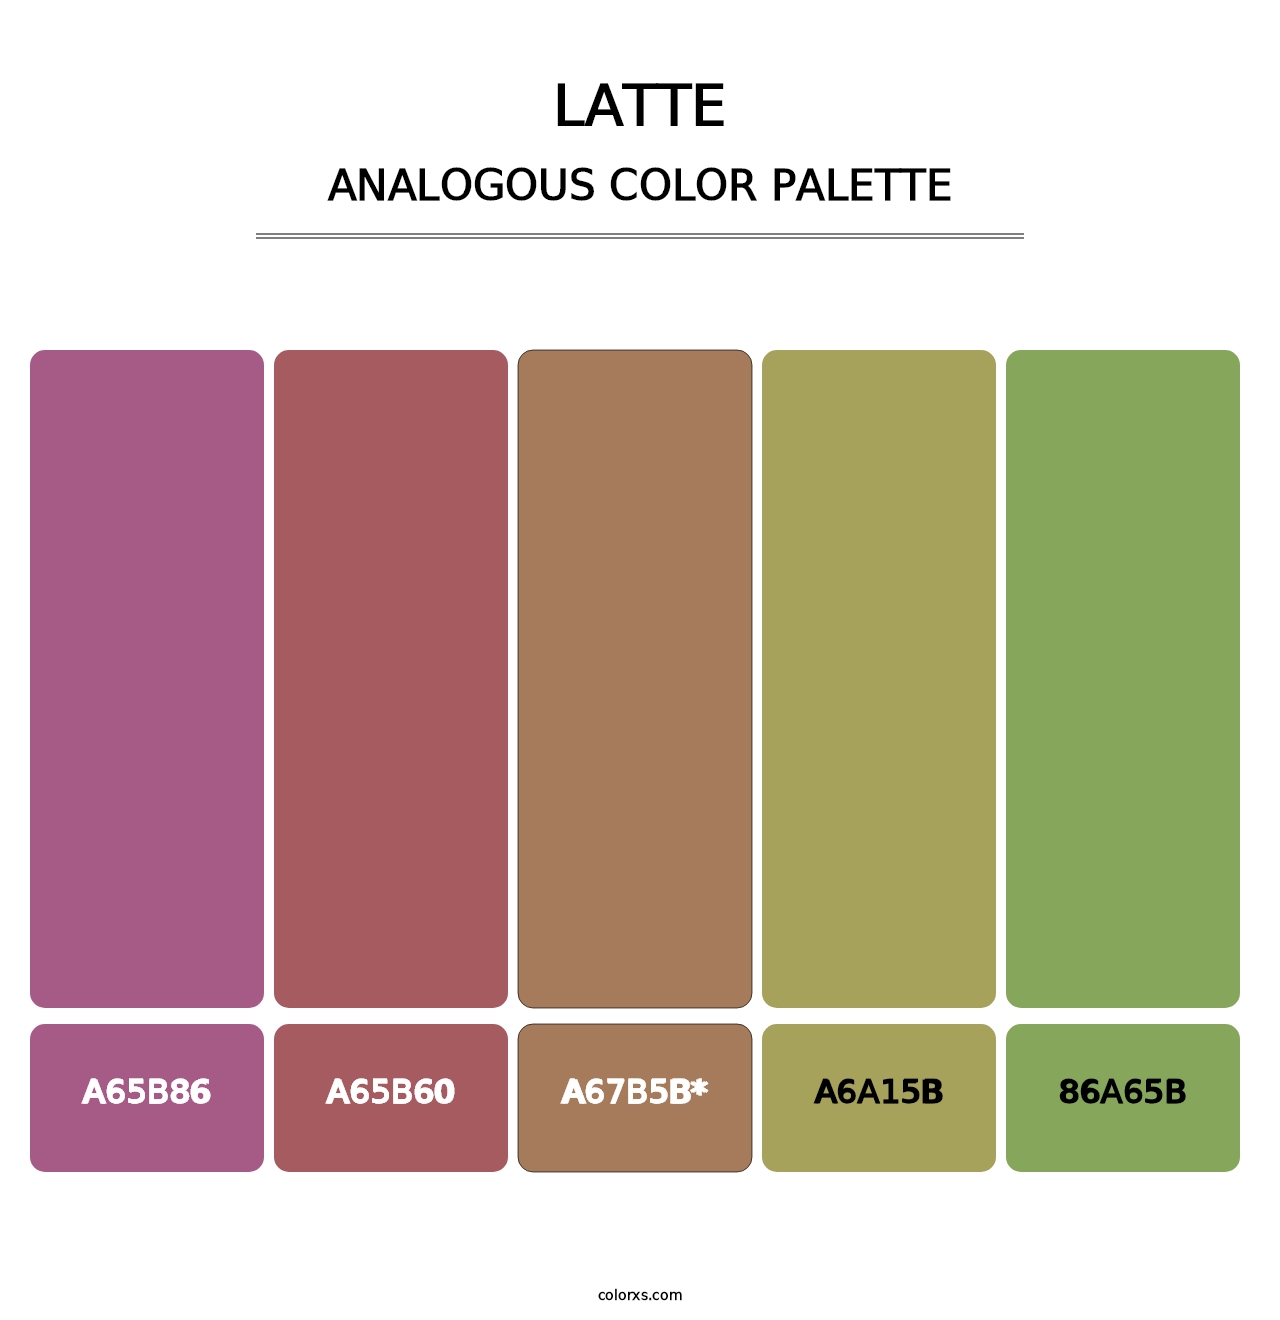 Latte - Analogous Color Palette